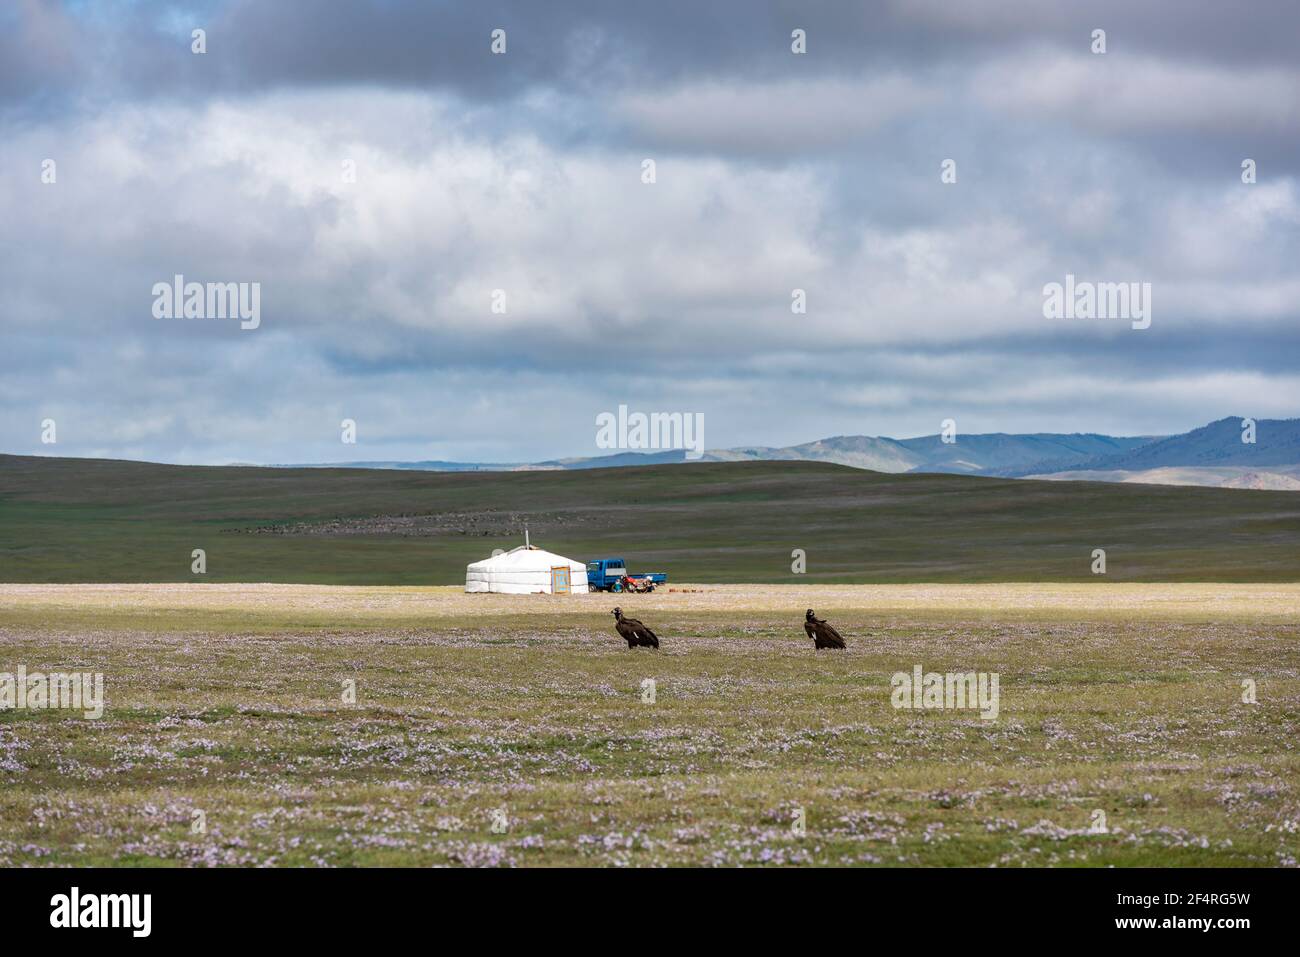 Tsetserleg, Mongoliam - 11. August 2019: Mongolische Jurte in der Steppe mit dunklen Wolken und Himmel und zwei Geiern im Vordergrund auf dem Gras. Stockfoto